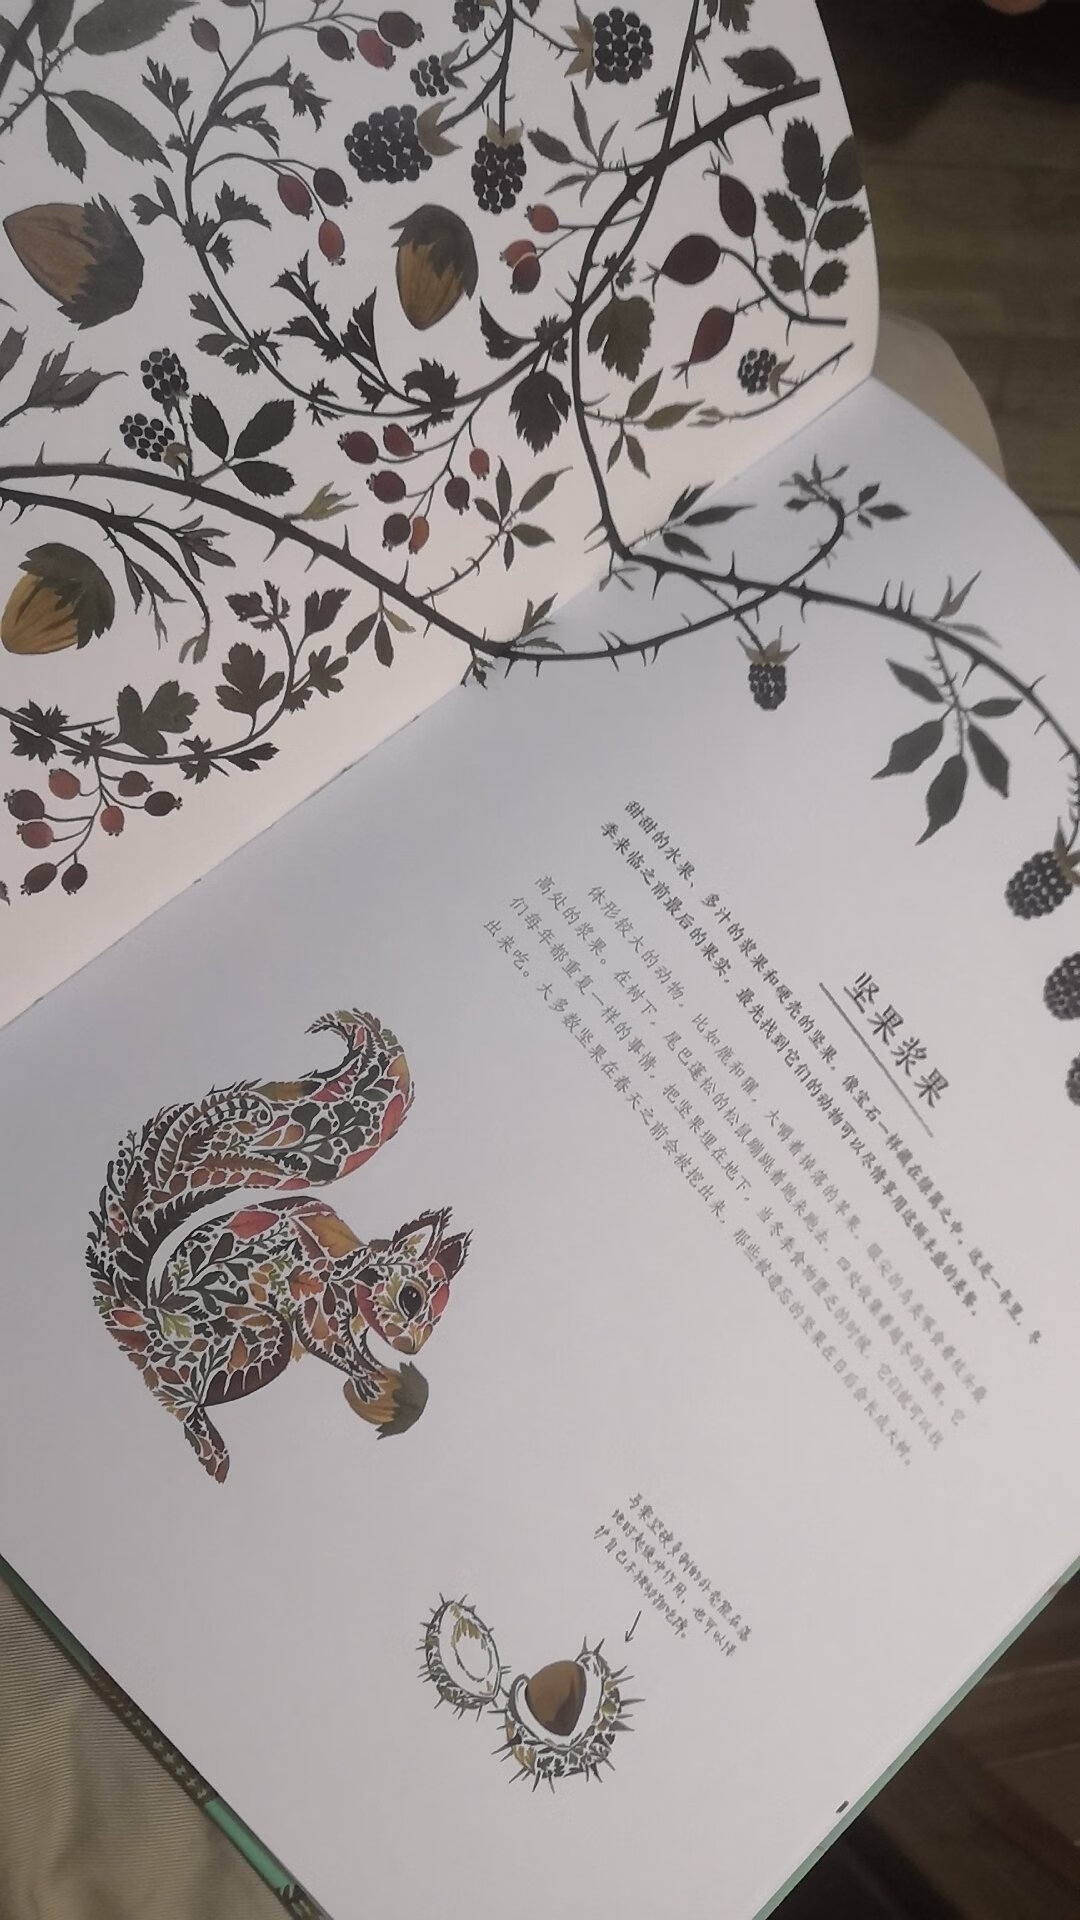 这本书不错，用树叶作画，可以让人联想出不同动物造型